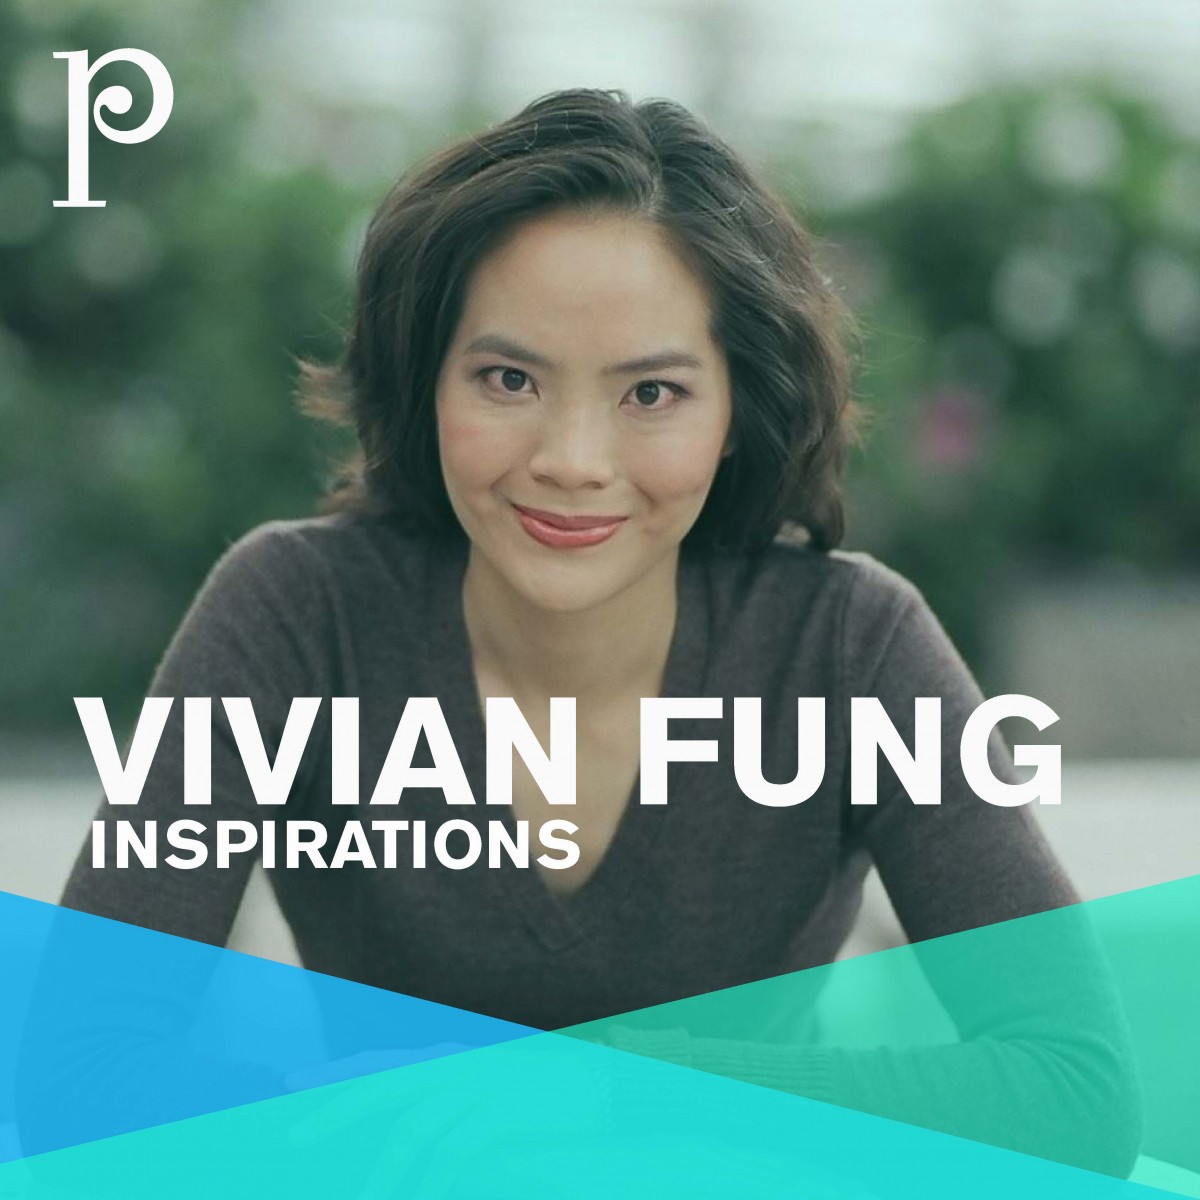 Vivian Fung